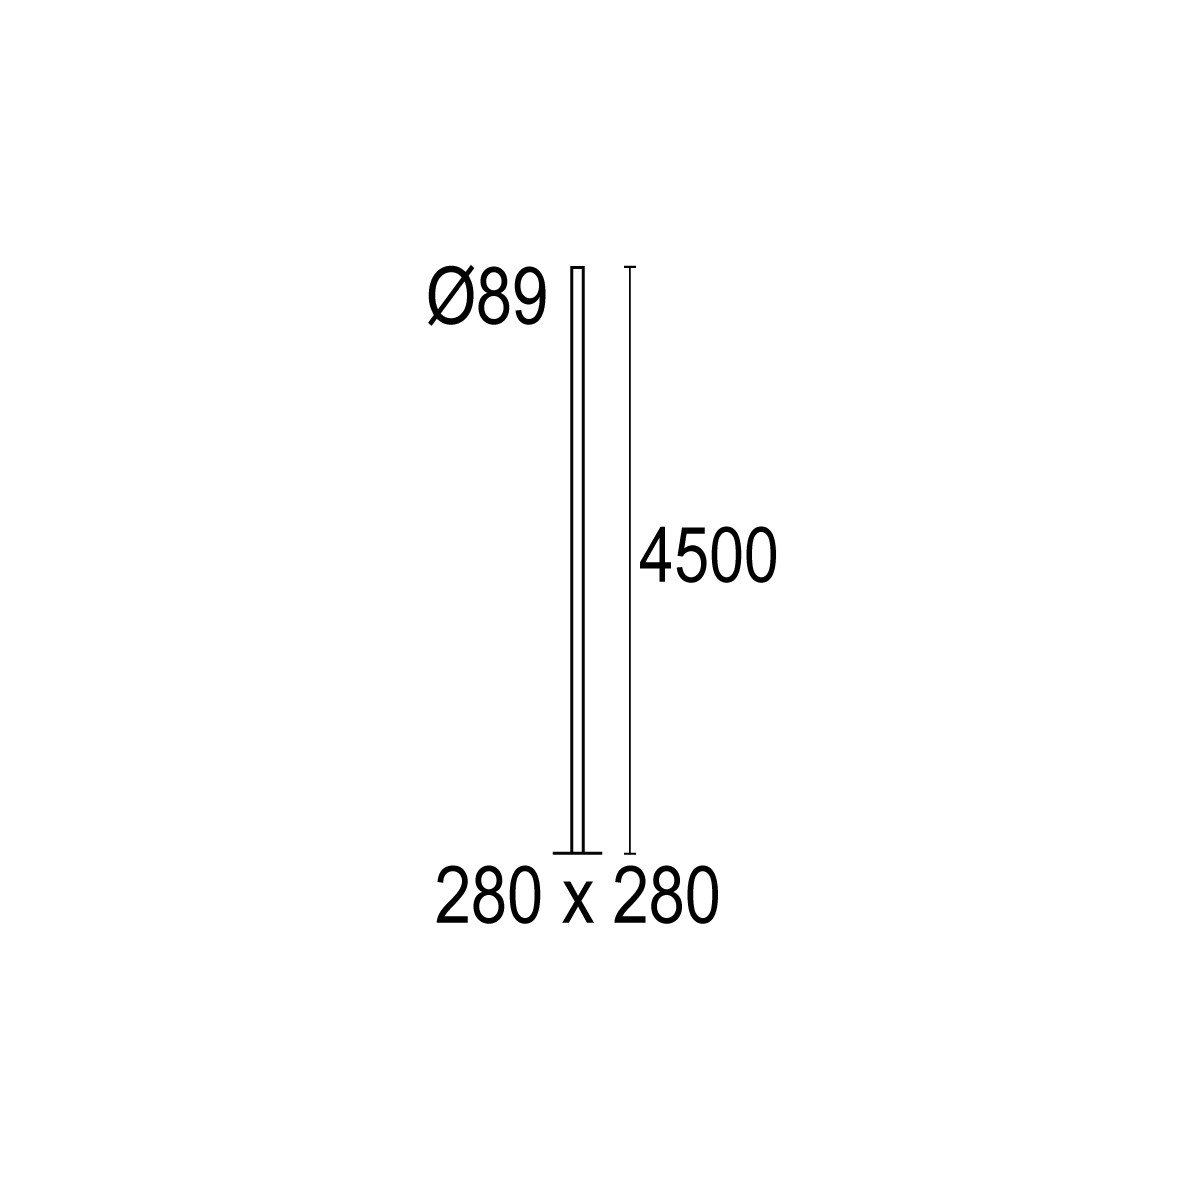 Postes cilíndricos con base Ø89 4.5m